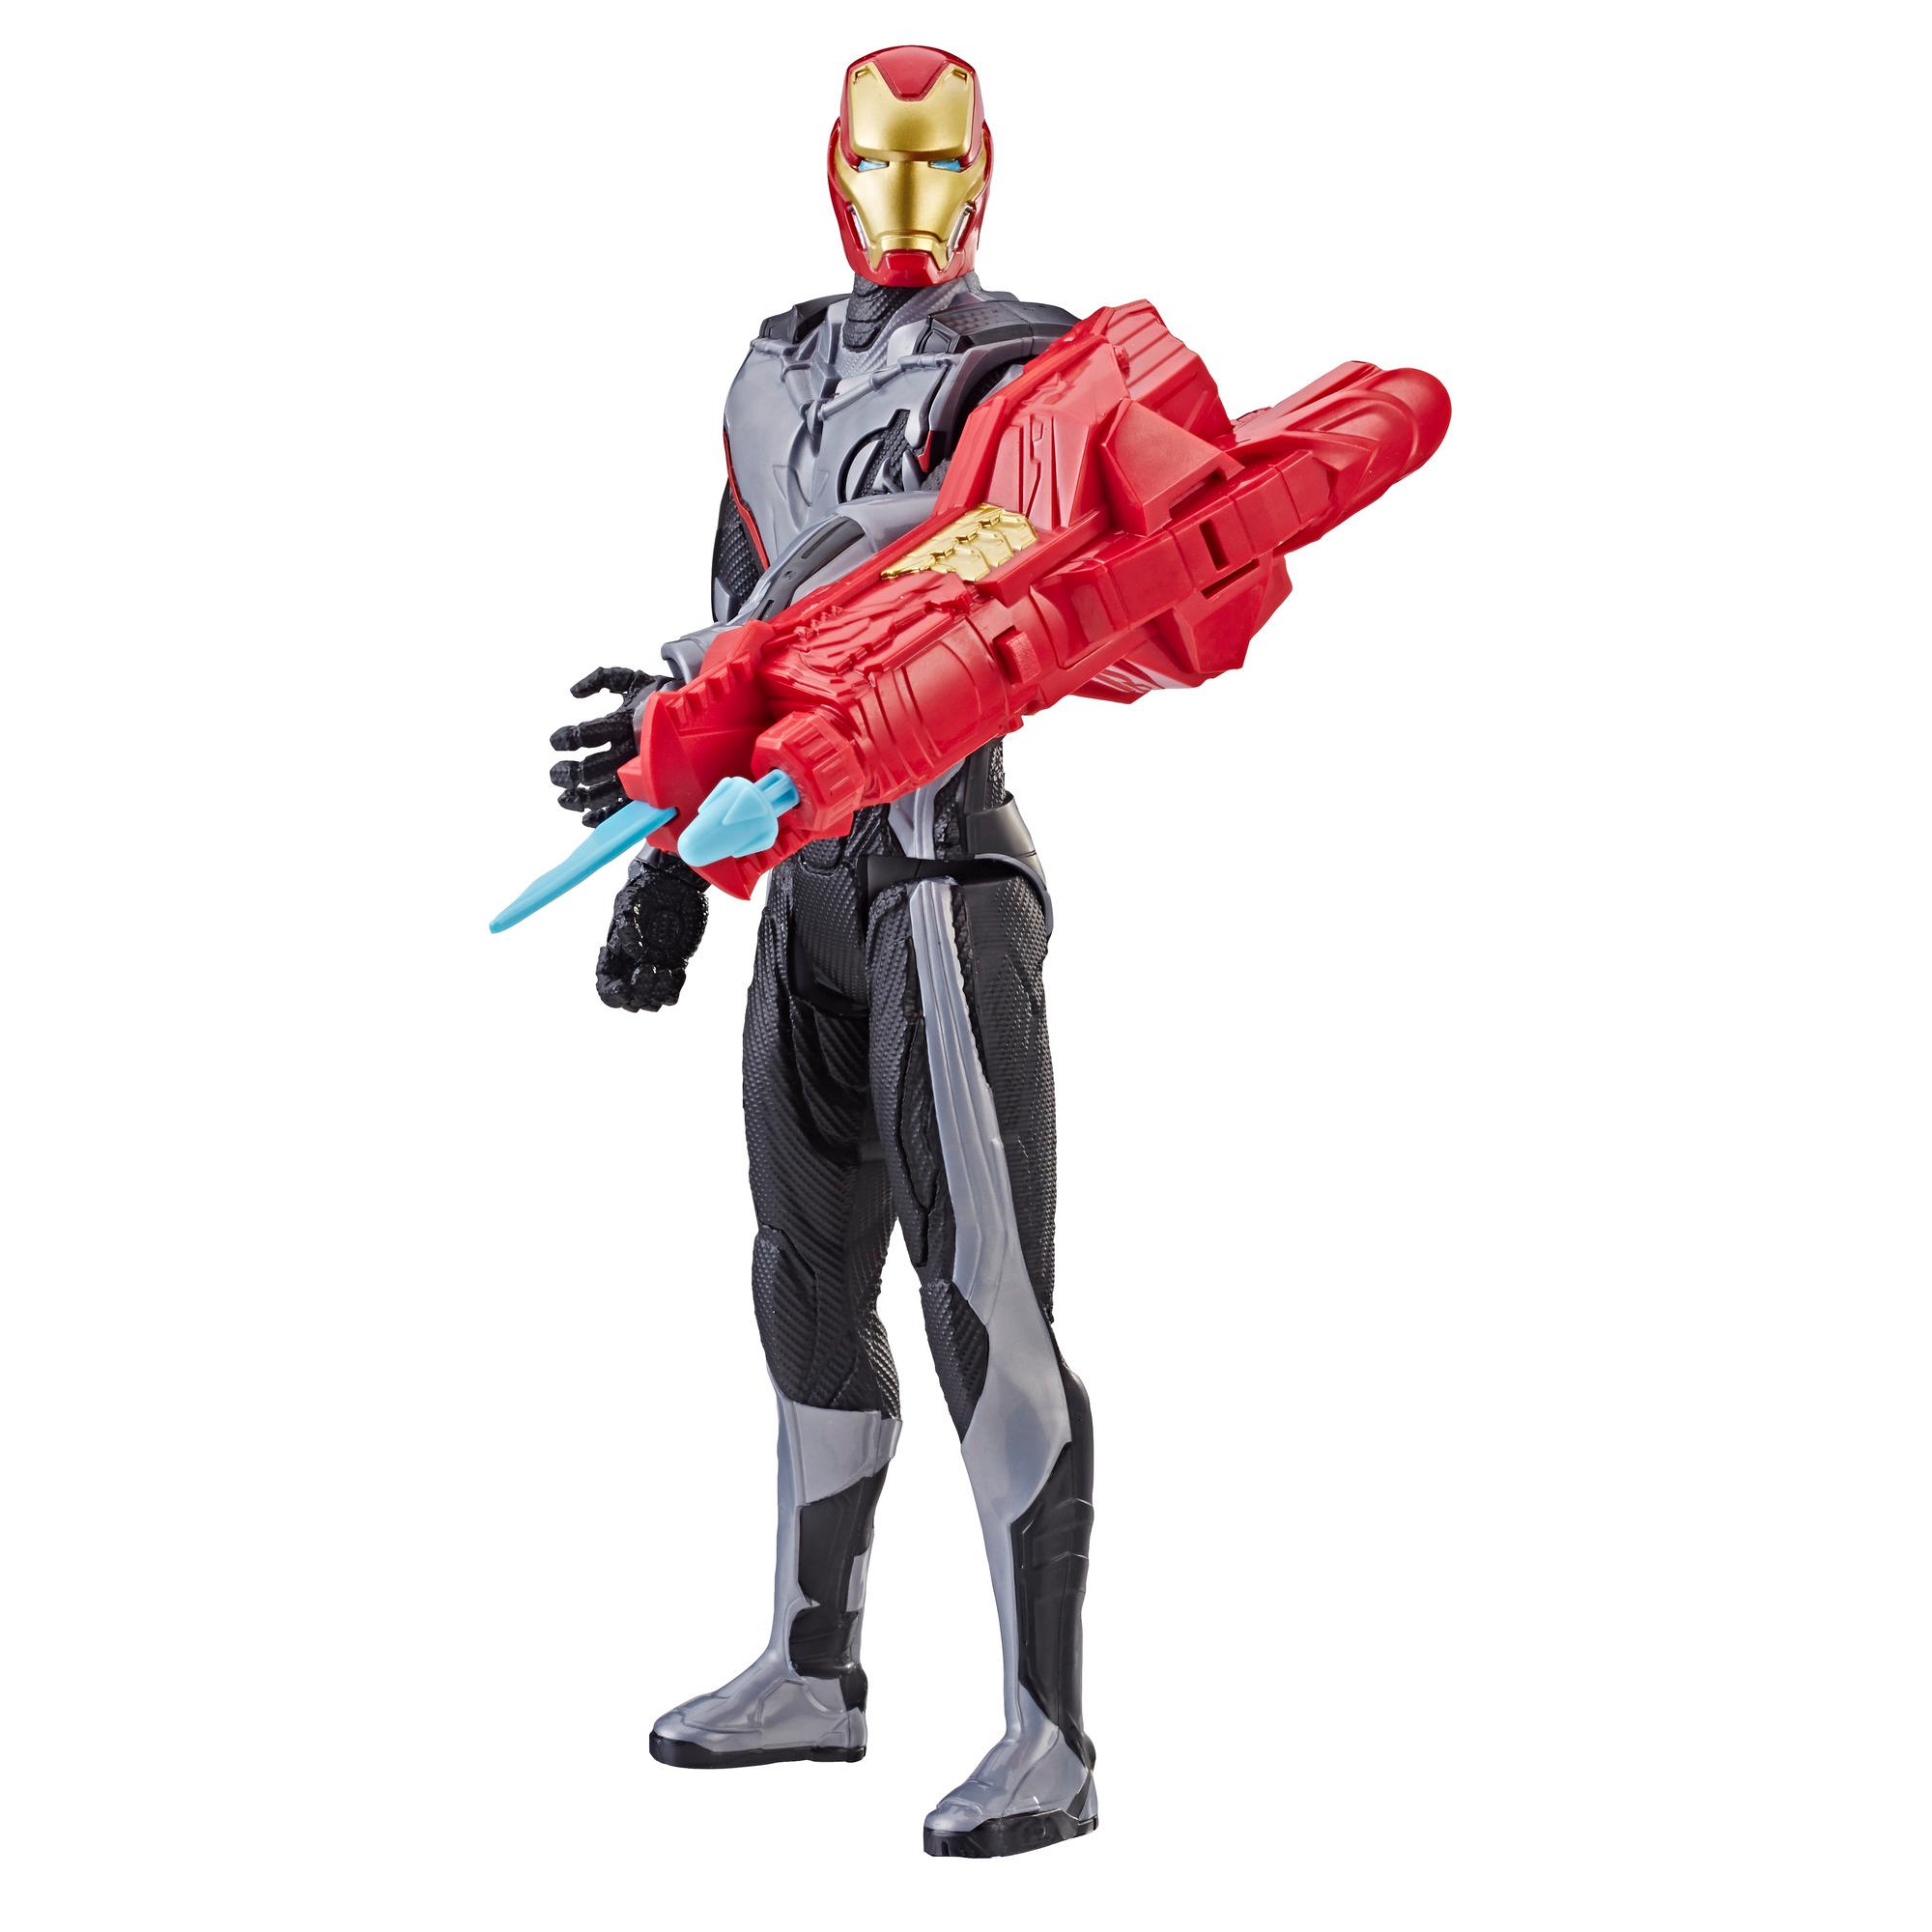 Marvel Marvel Avengers Endgame Titan Hero Power Fx Iron Man